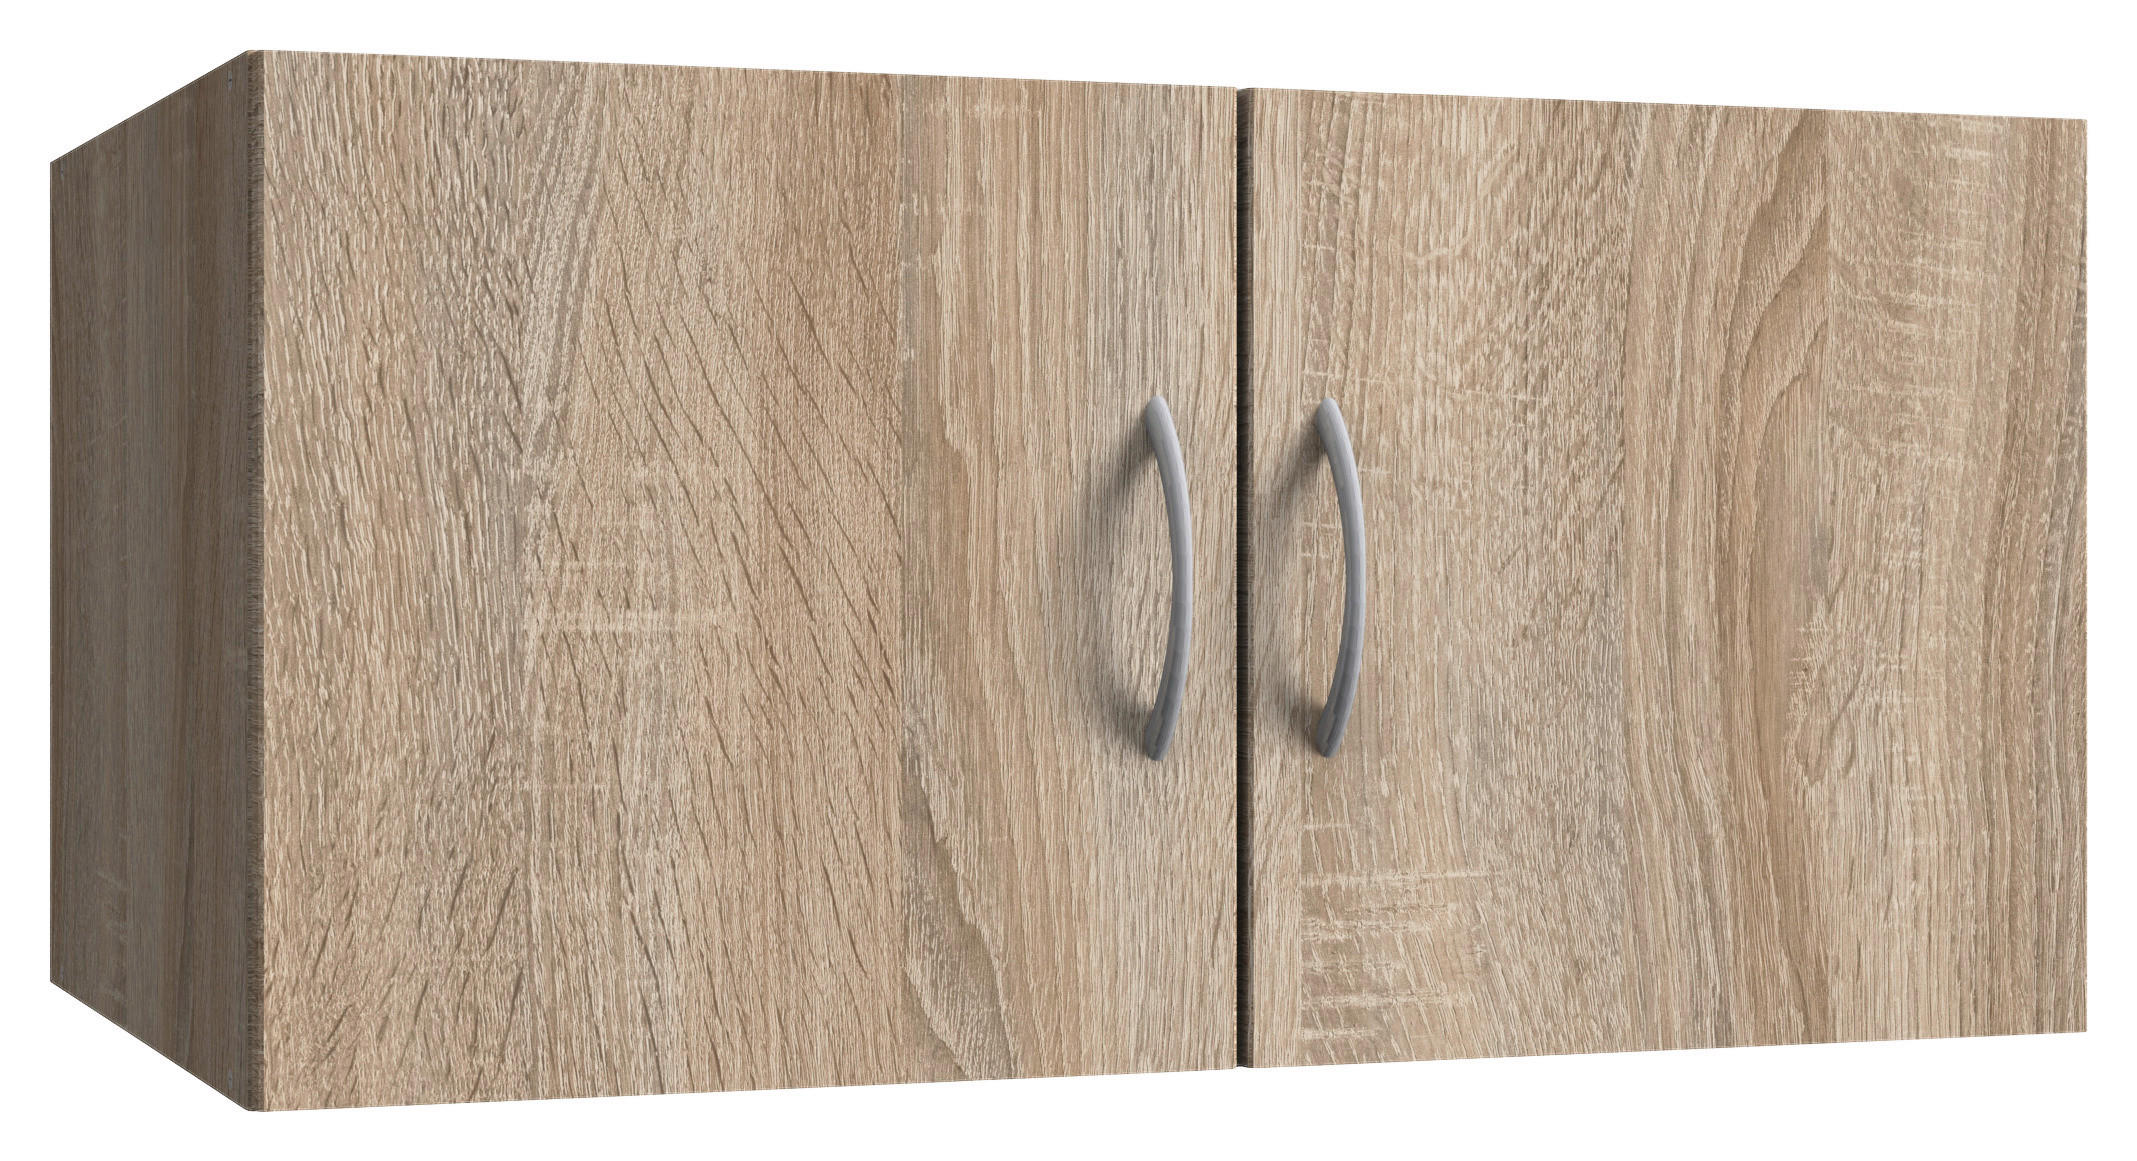 NADSTAVEC NA SKRIŇU, 80/40/40 cm - farby duba/farby hliníka, Konventionell, kompozitné drevo/plast (80/40/40cm) - Xora